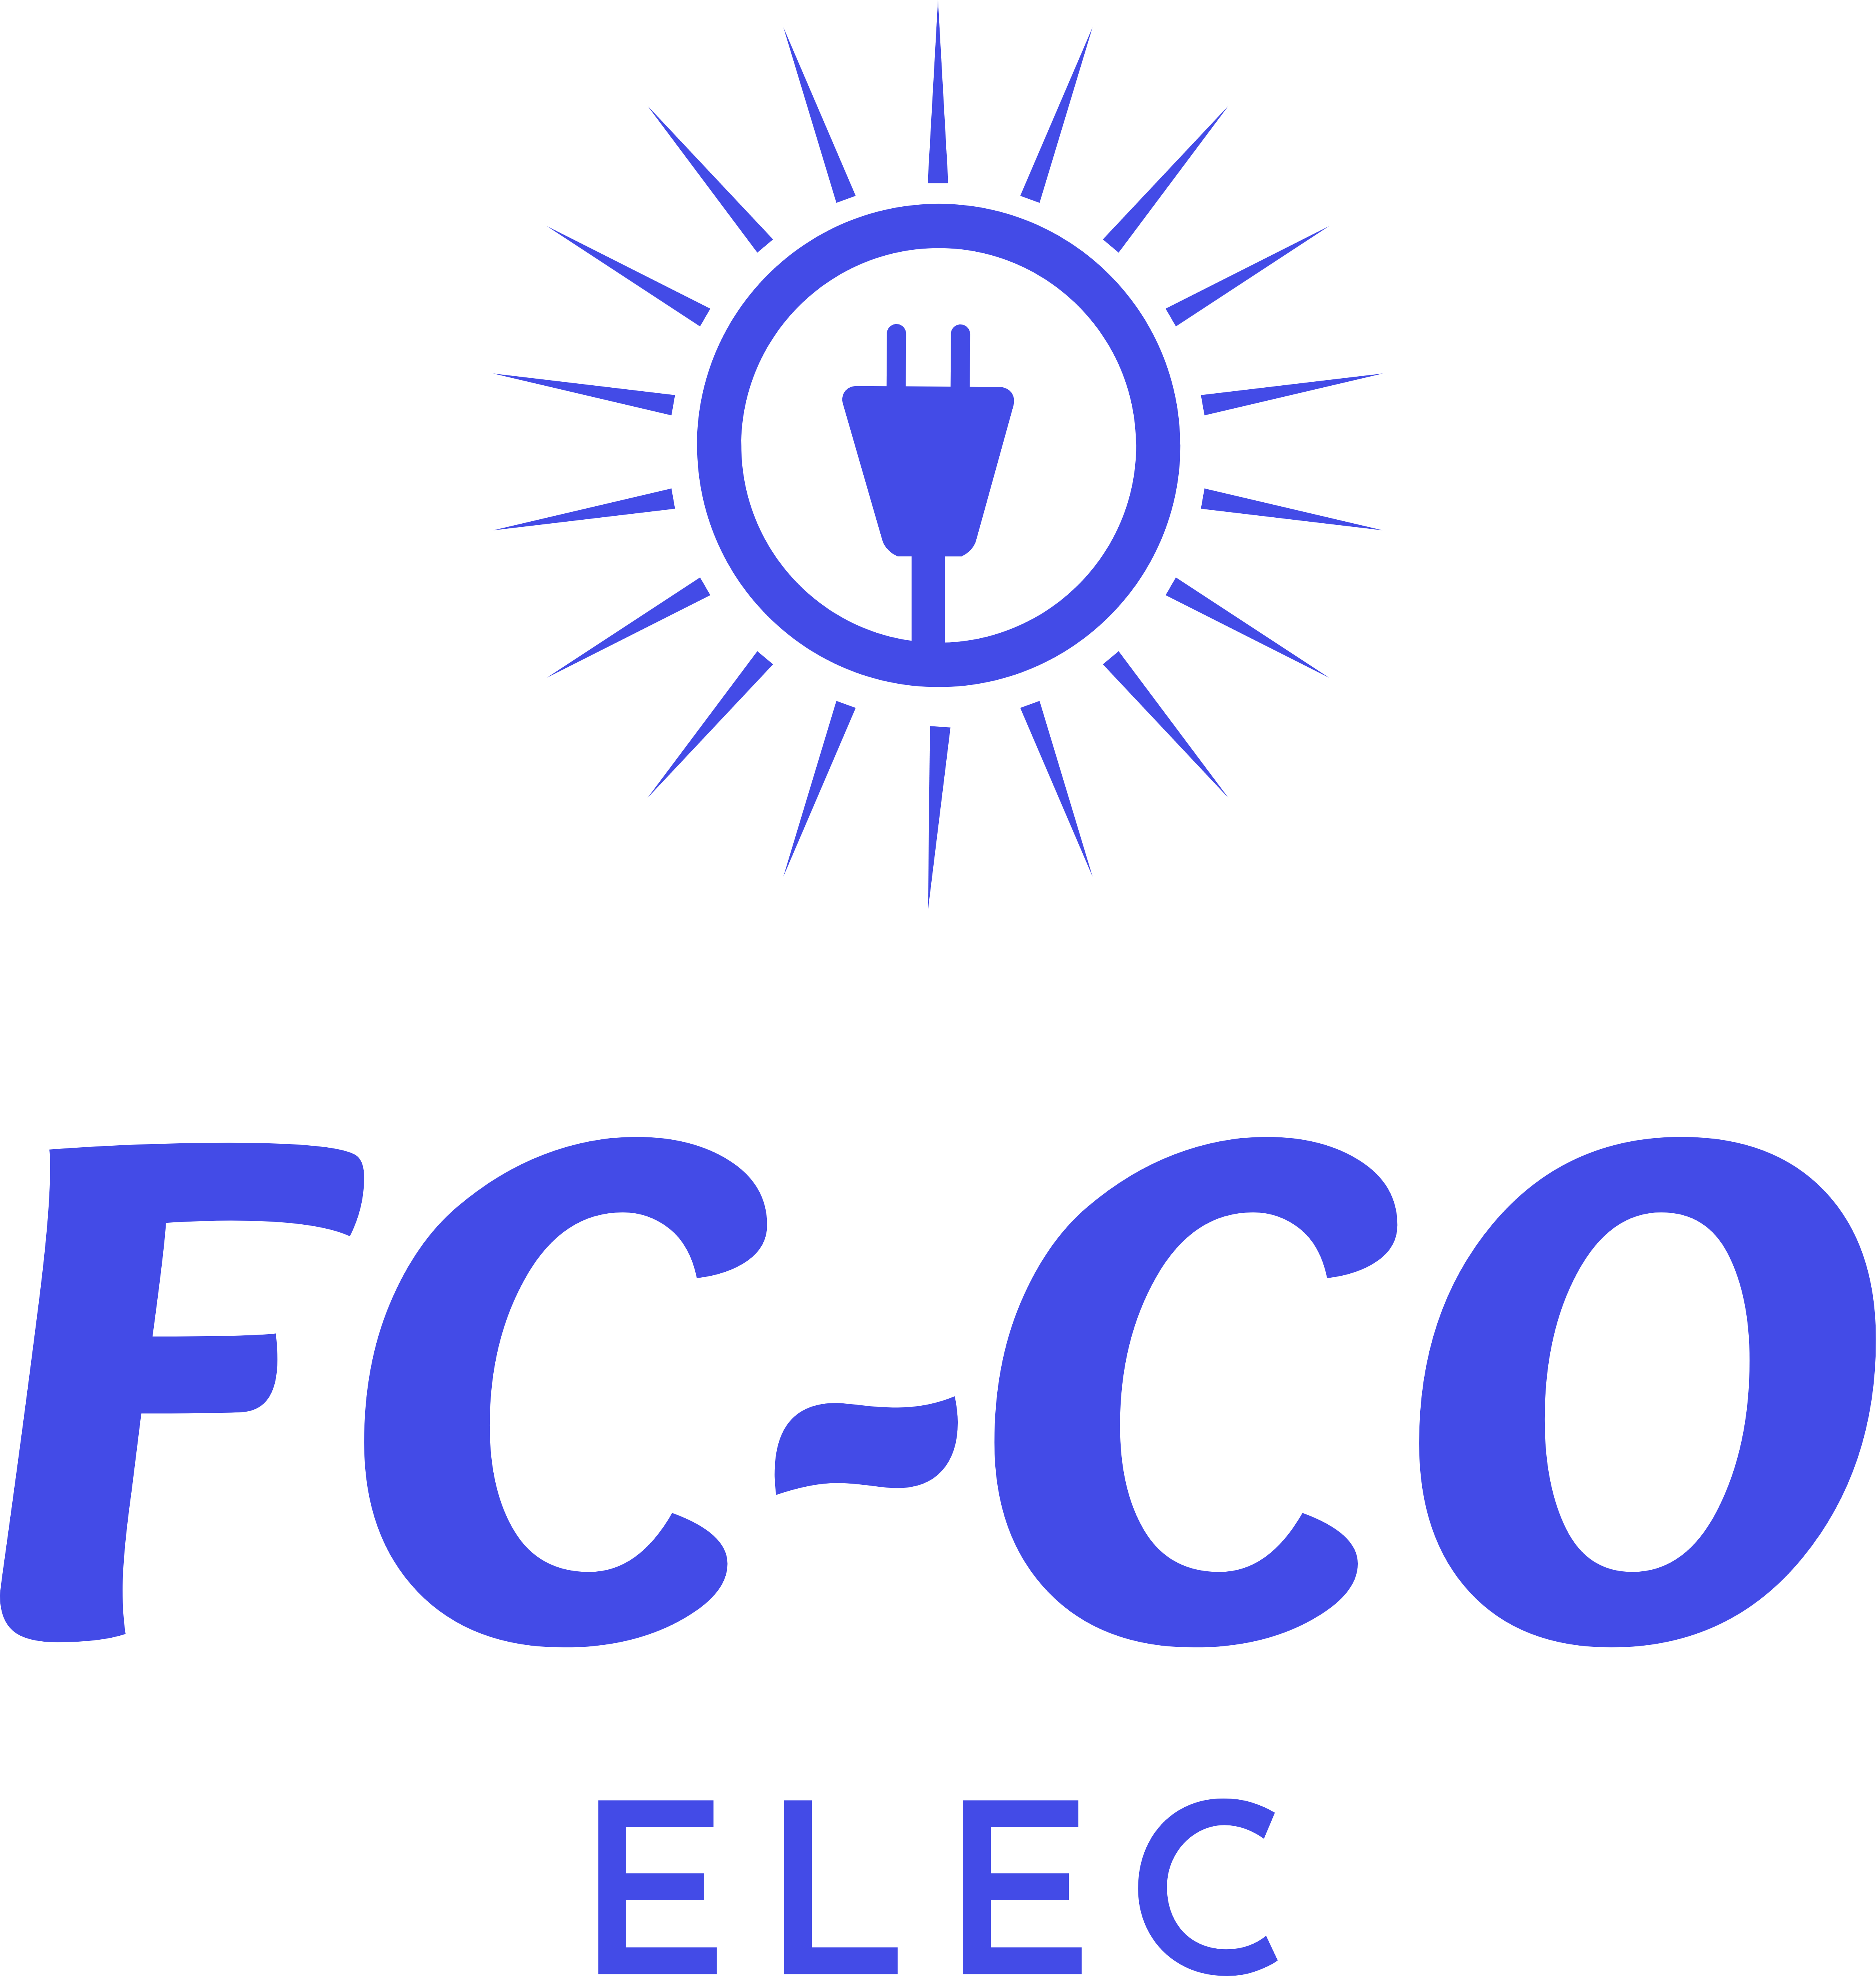 FC-CO ELEC